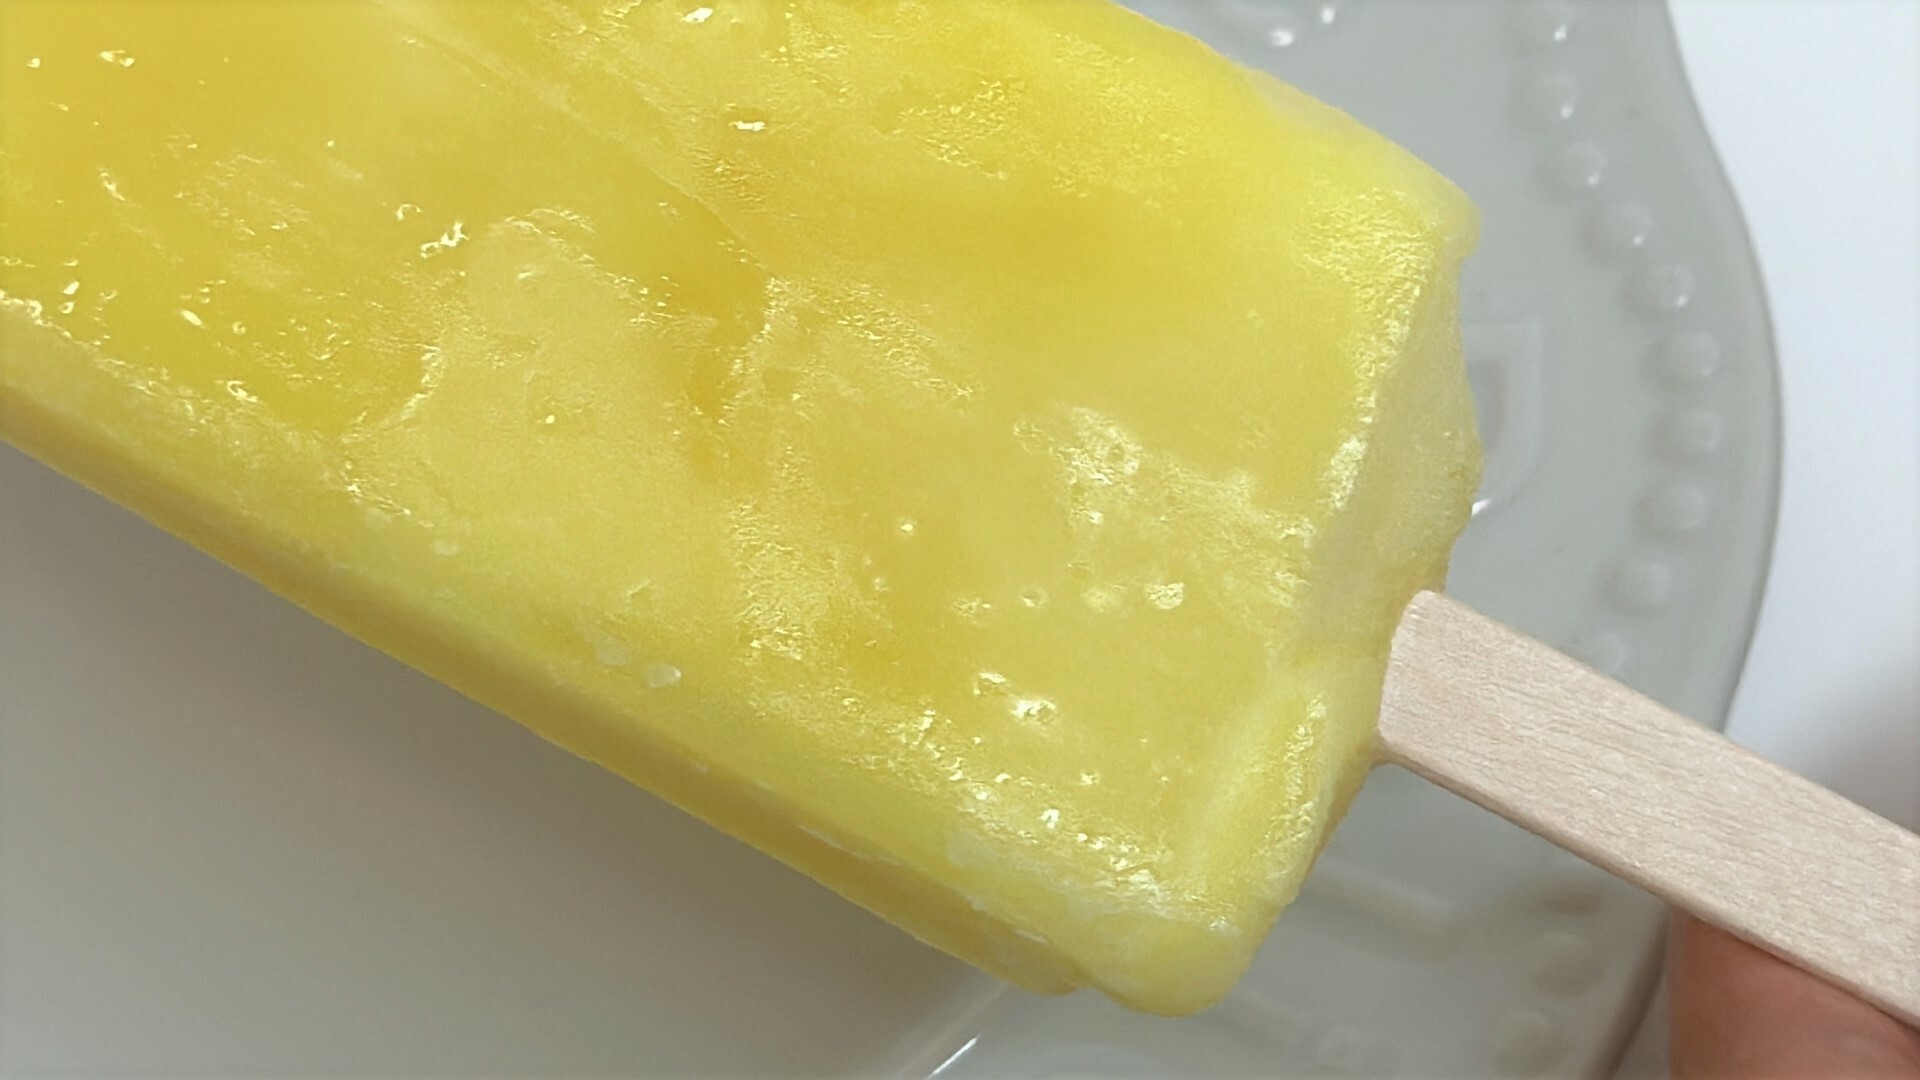 アイス表面がパイナップルらしいとろける食感ぎゅっとパイナップルの表面